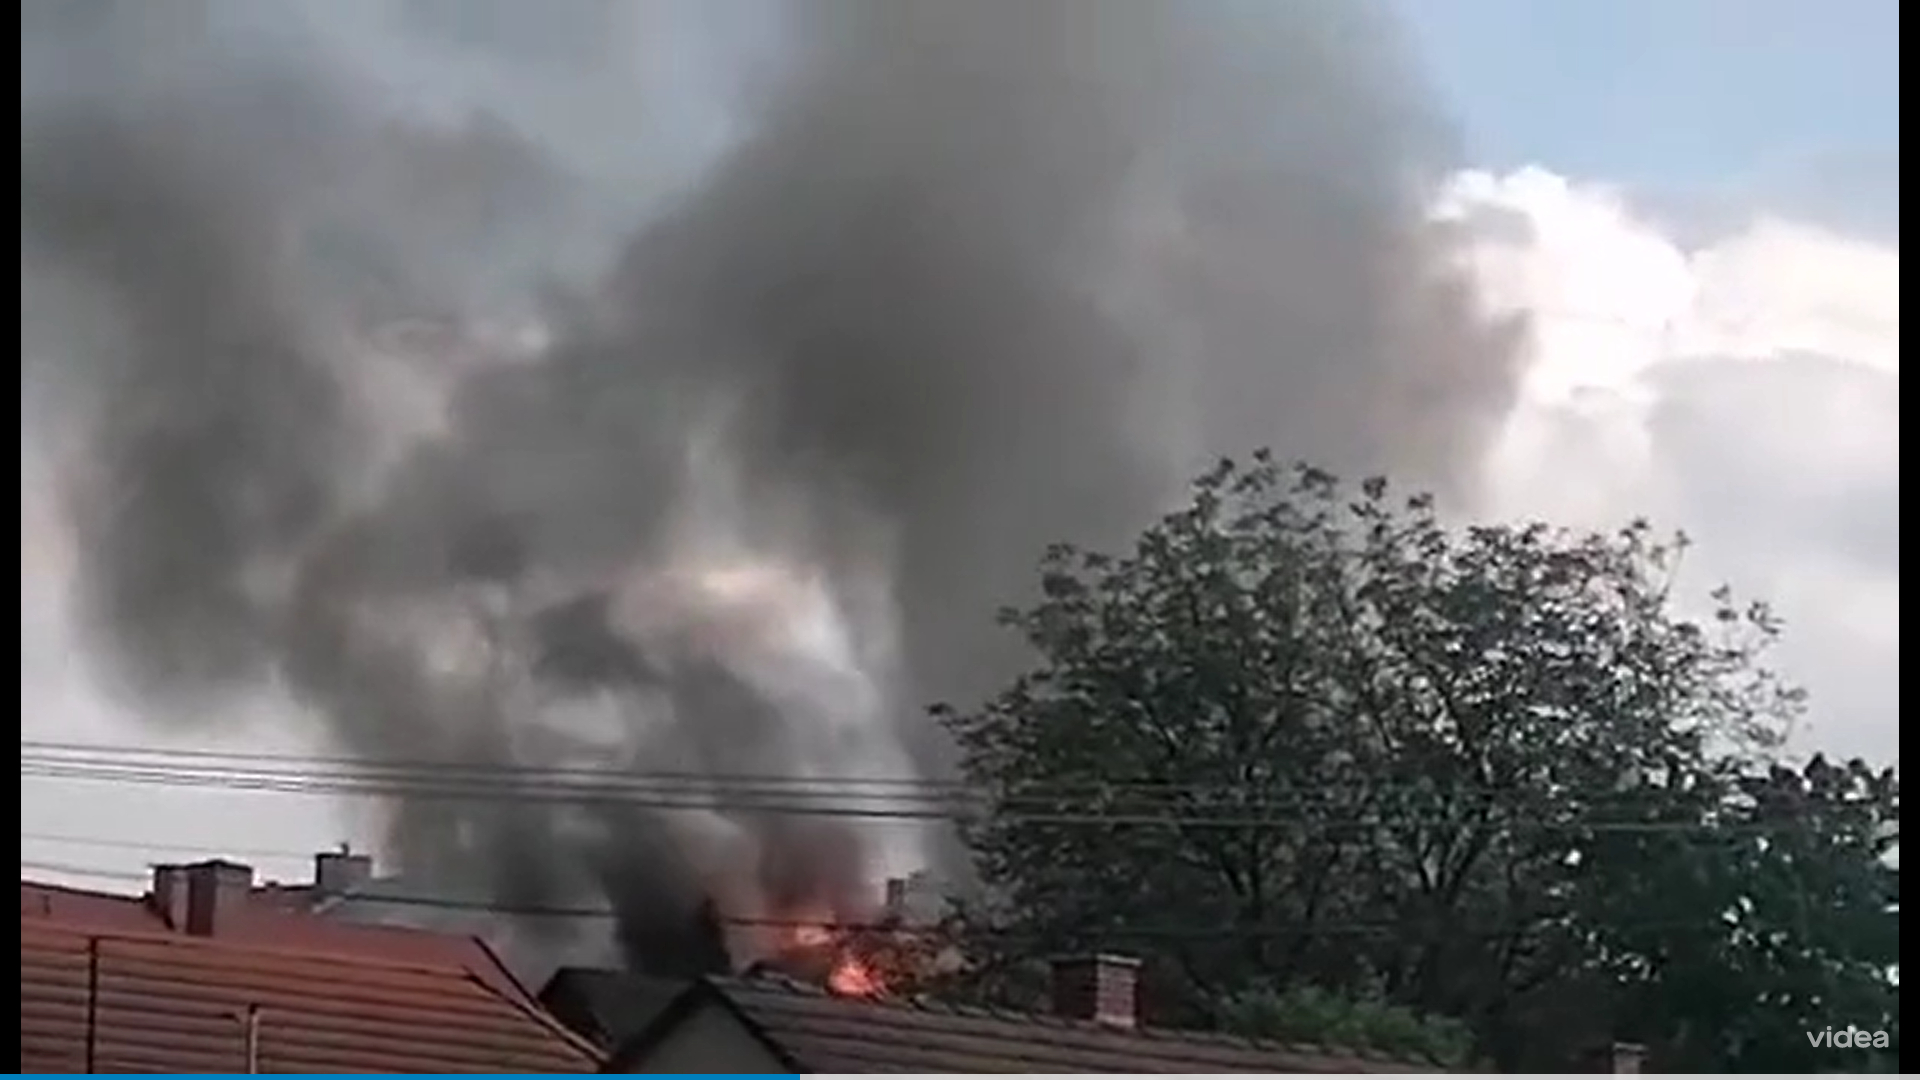 Tűz ütött ki egy társasházban Zalaegerszegen, a lakókat ki kellett menekíteni